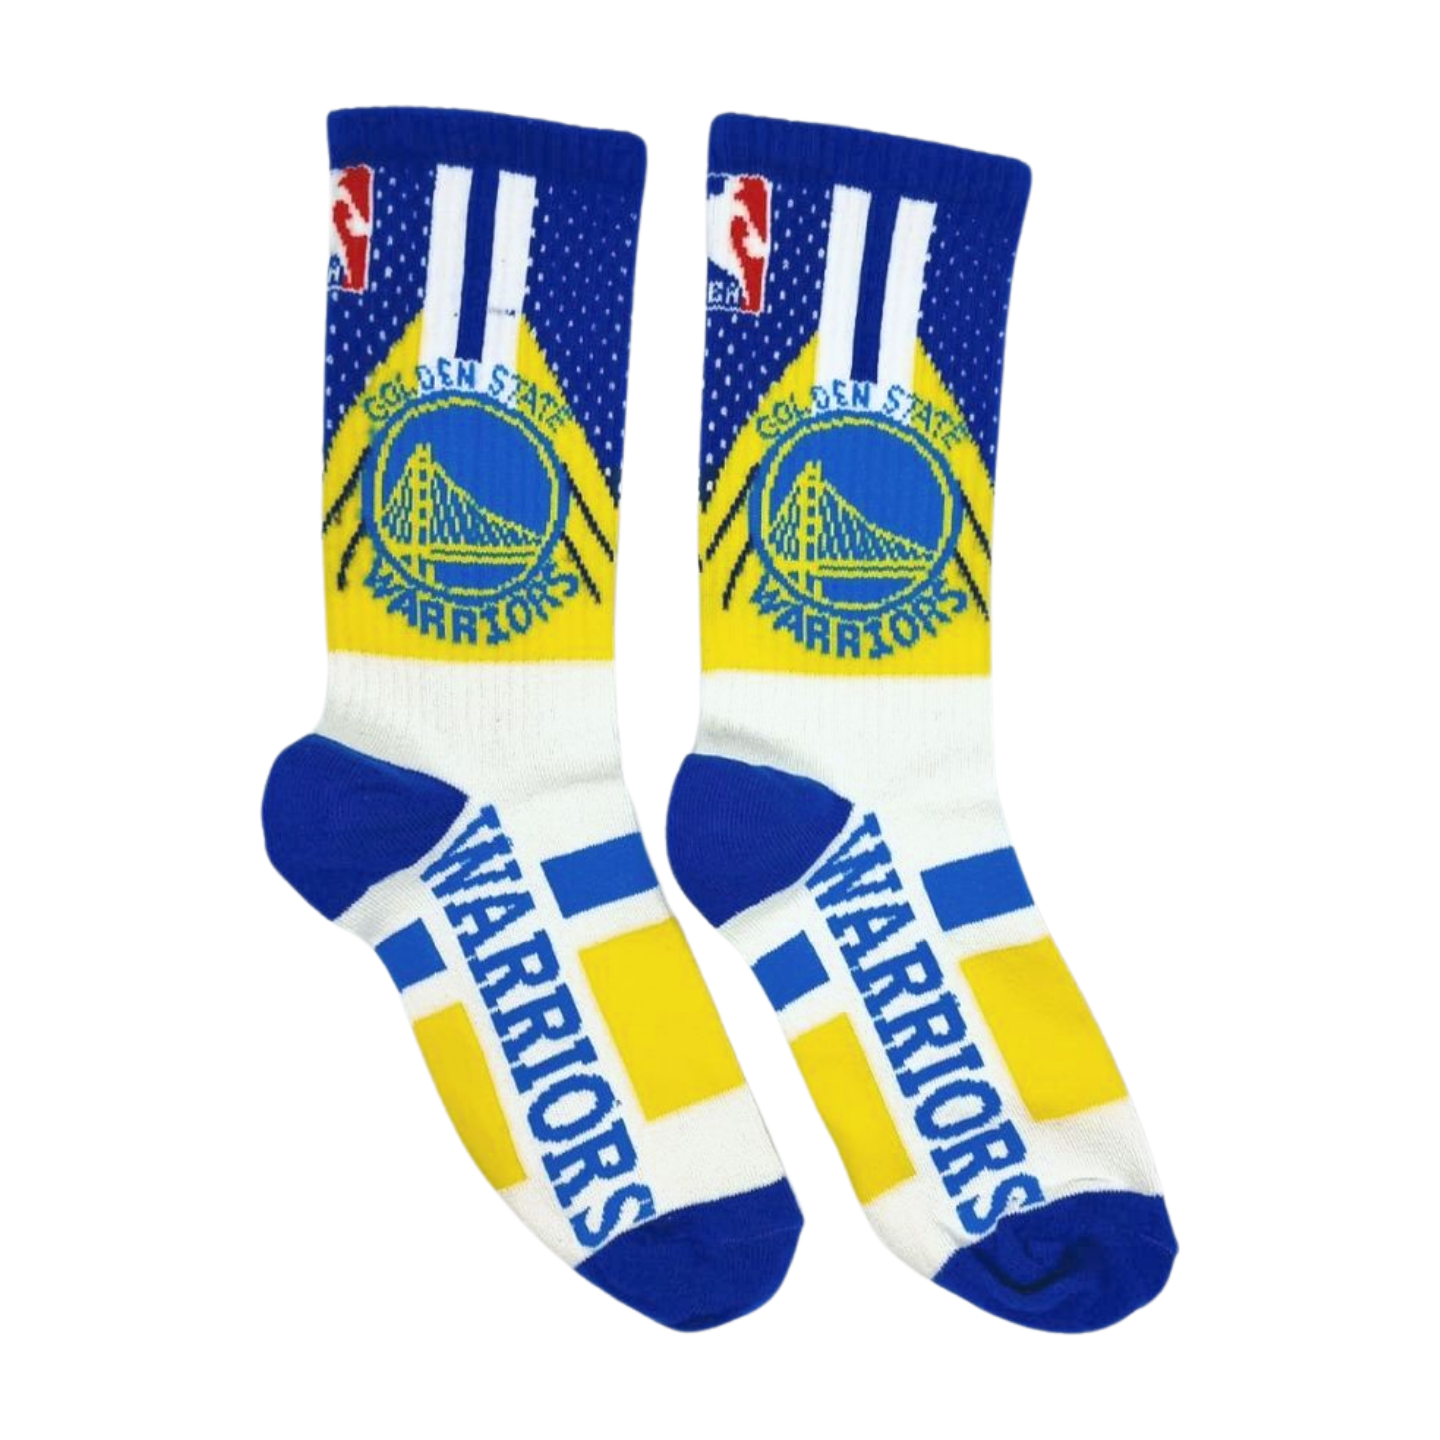 Golden State Warriors Basketball Team Socks